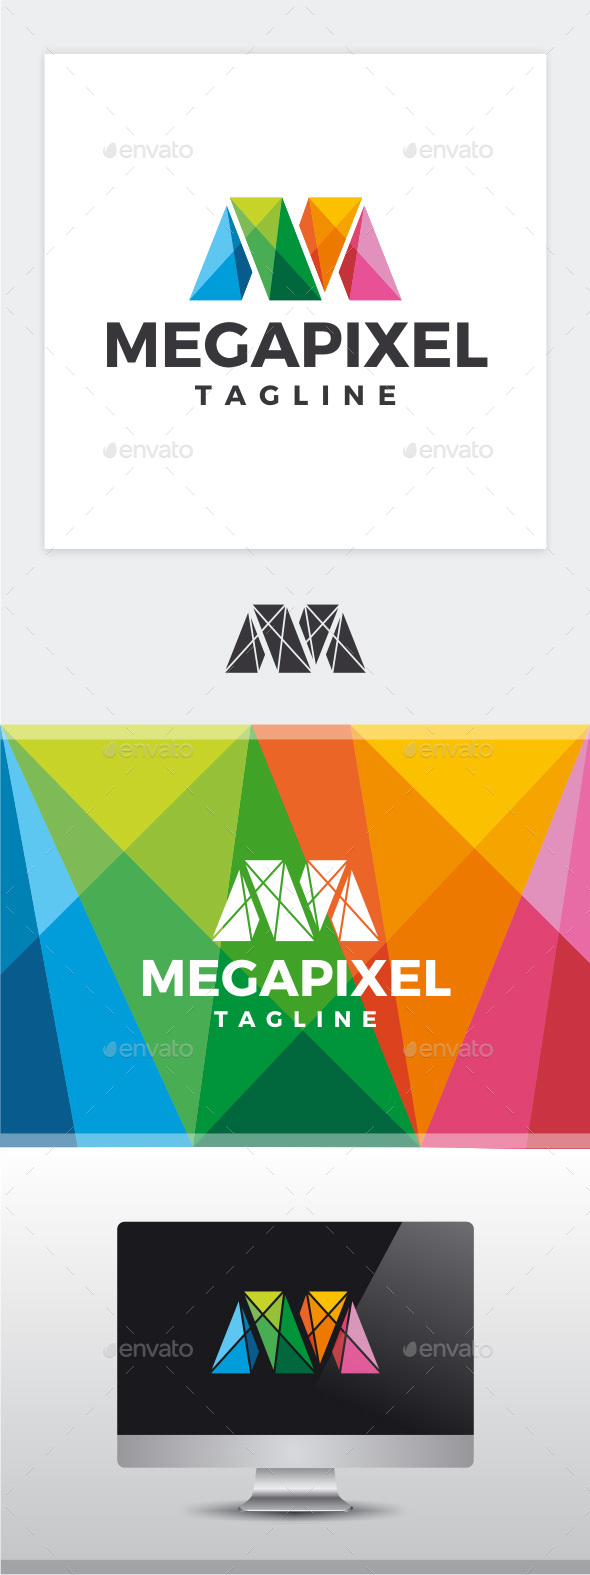 Megapixel - Letter M Logo